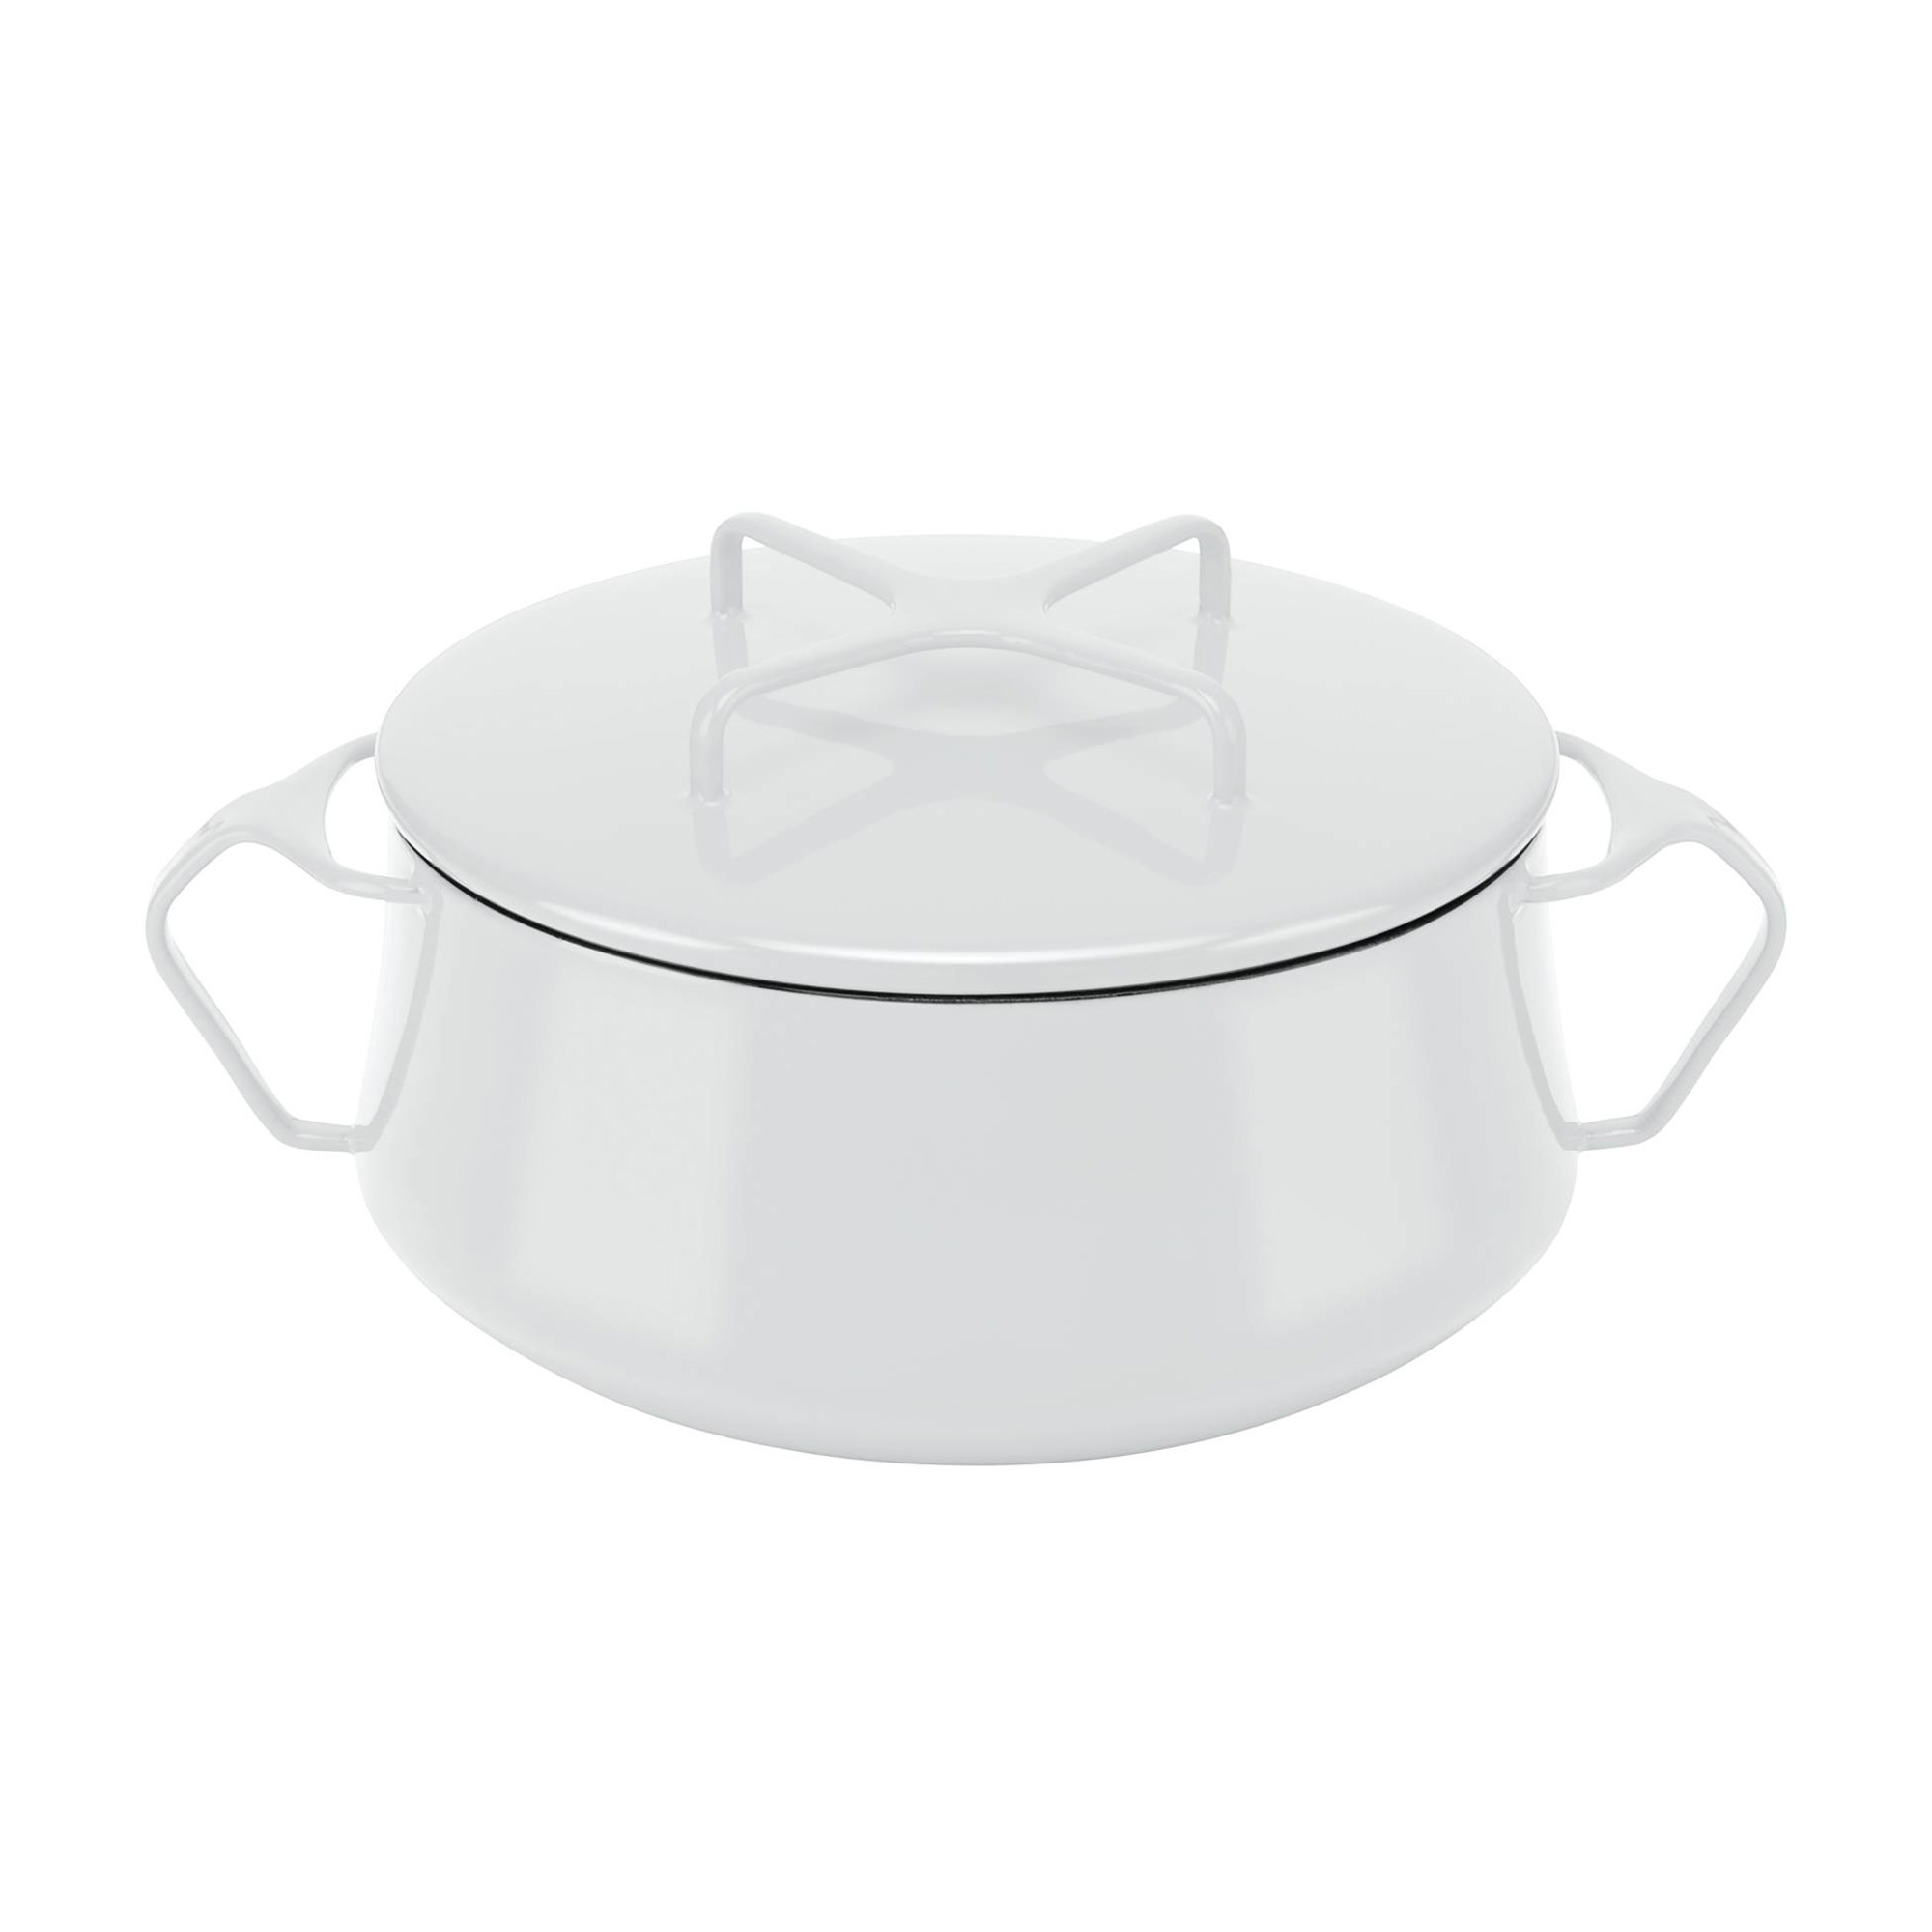 Dansk Kobenstyle 1-Quart Saucepan with Lid - White